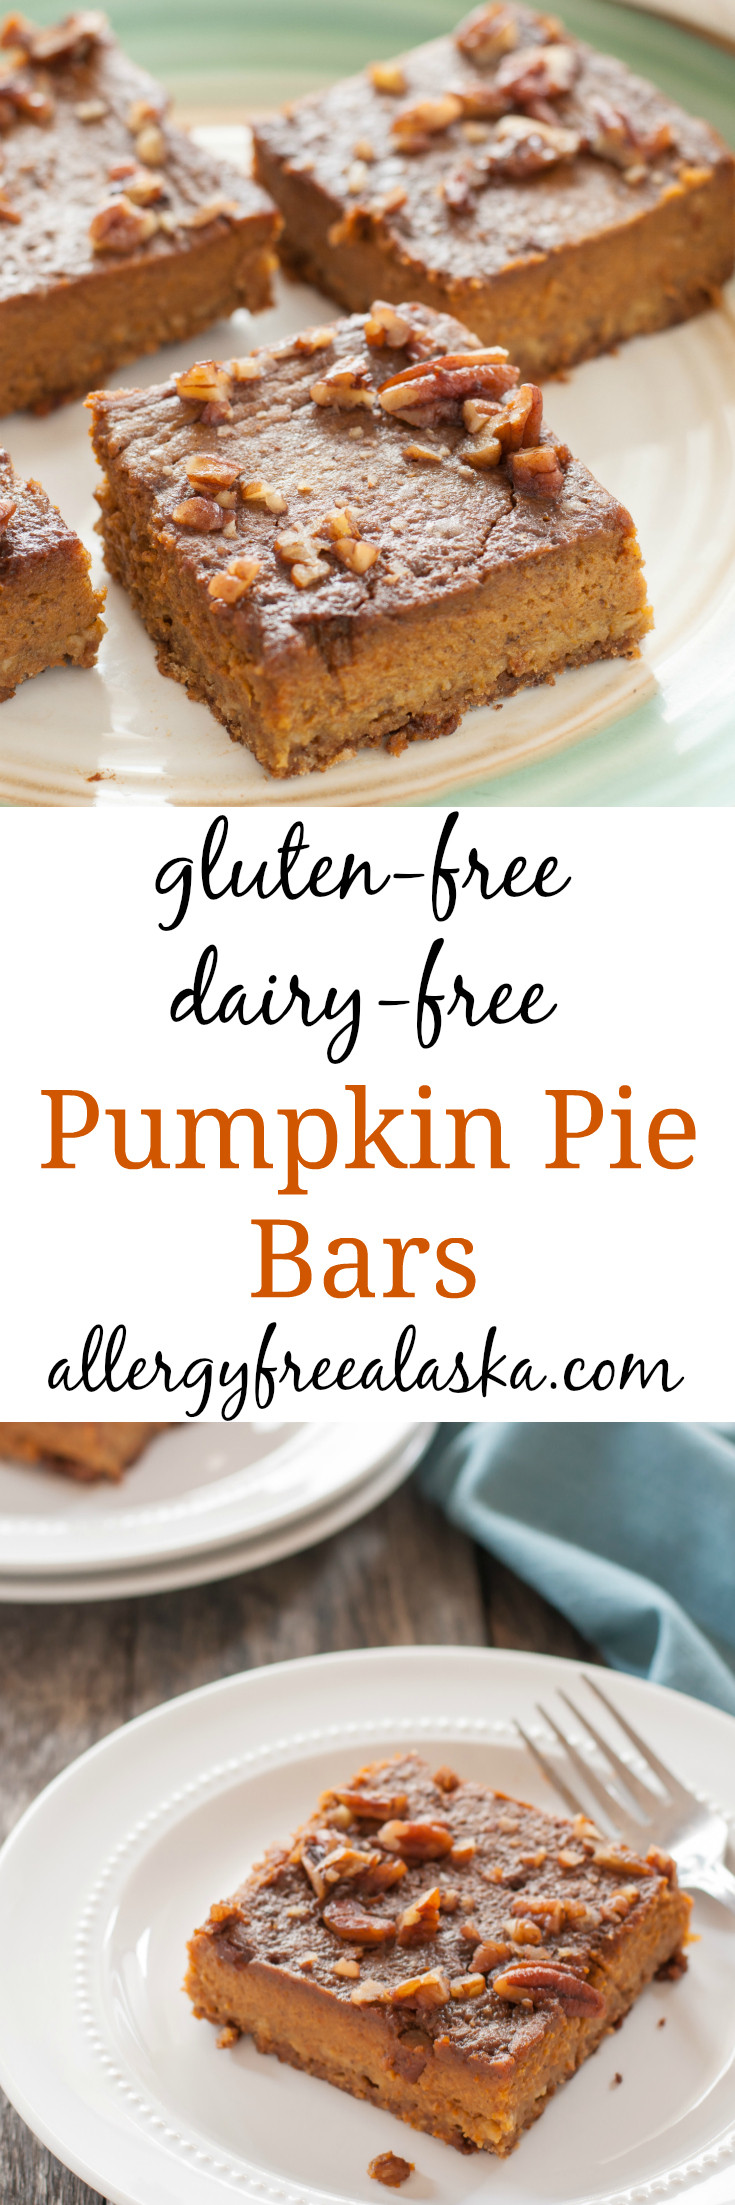 Dairy Free Pumpkin Pie
 gluten free dairy free pumpkin pie bar recipe from allergy